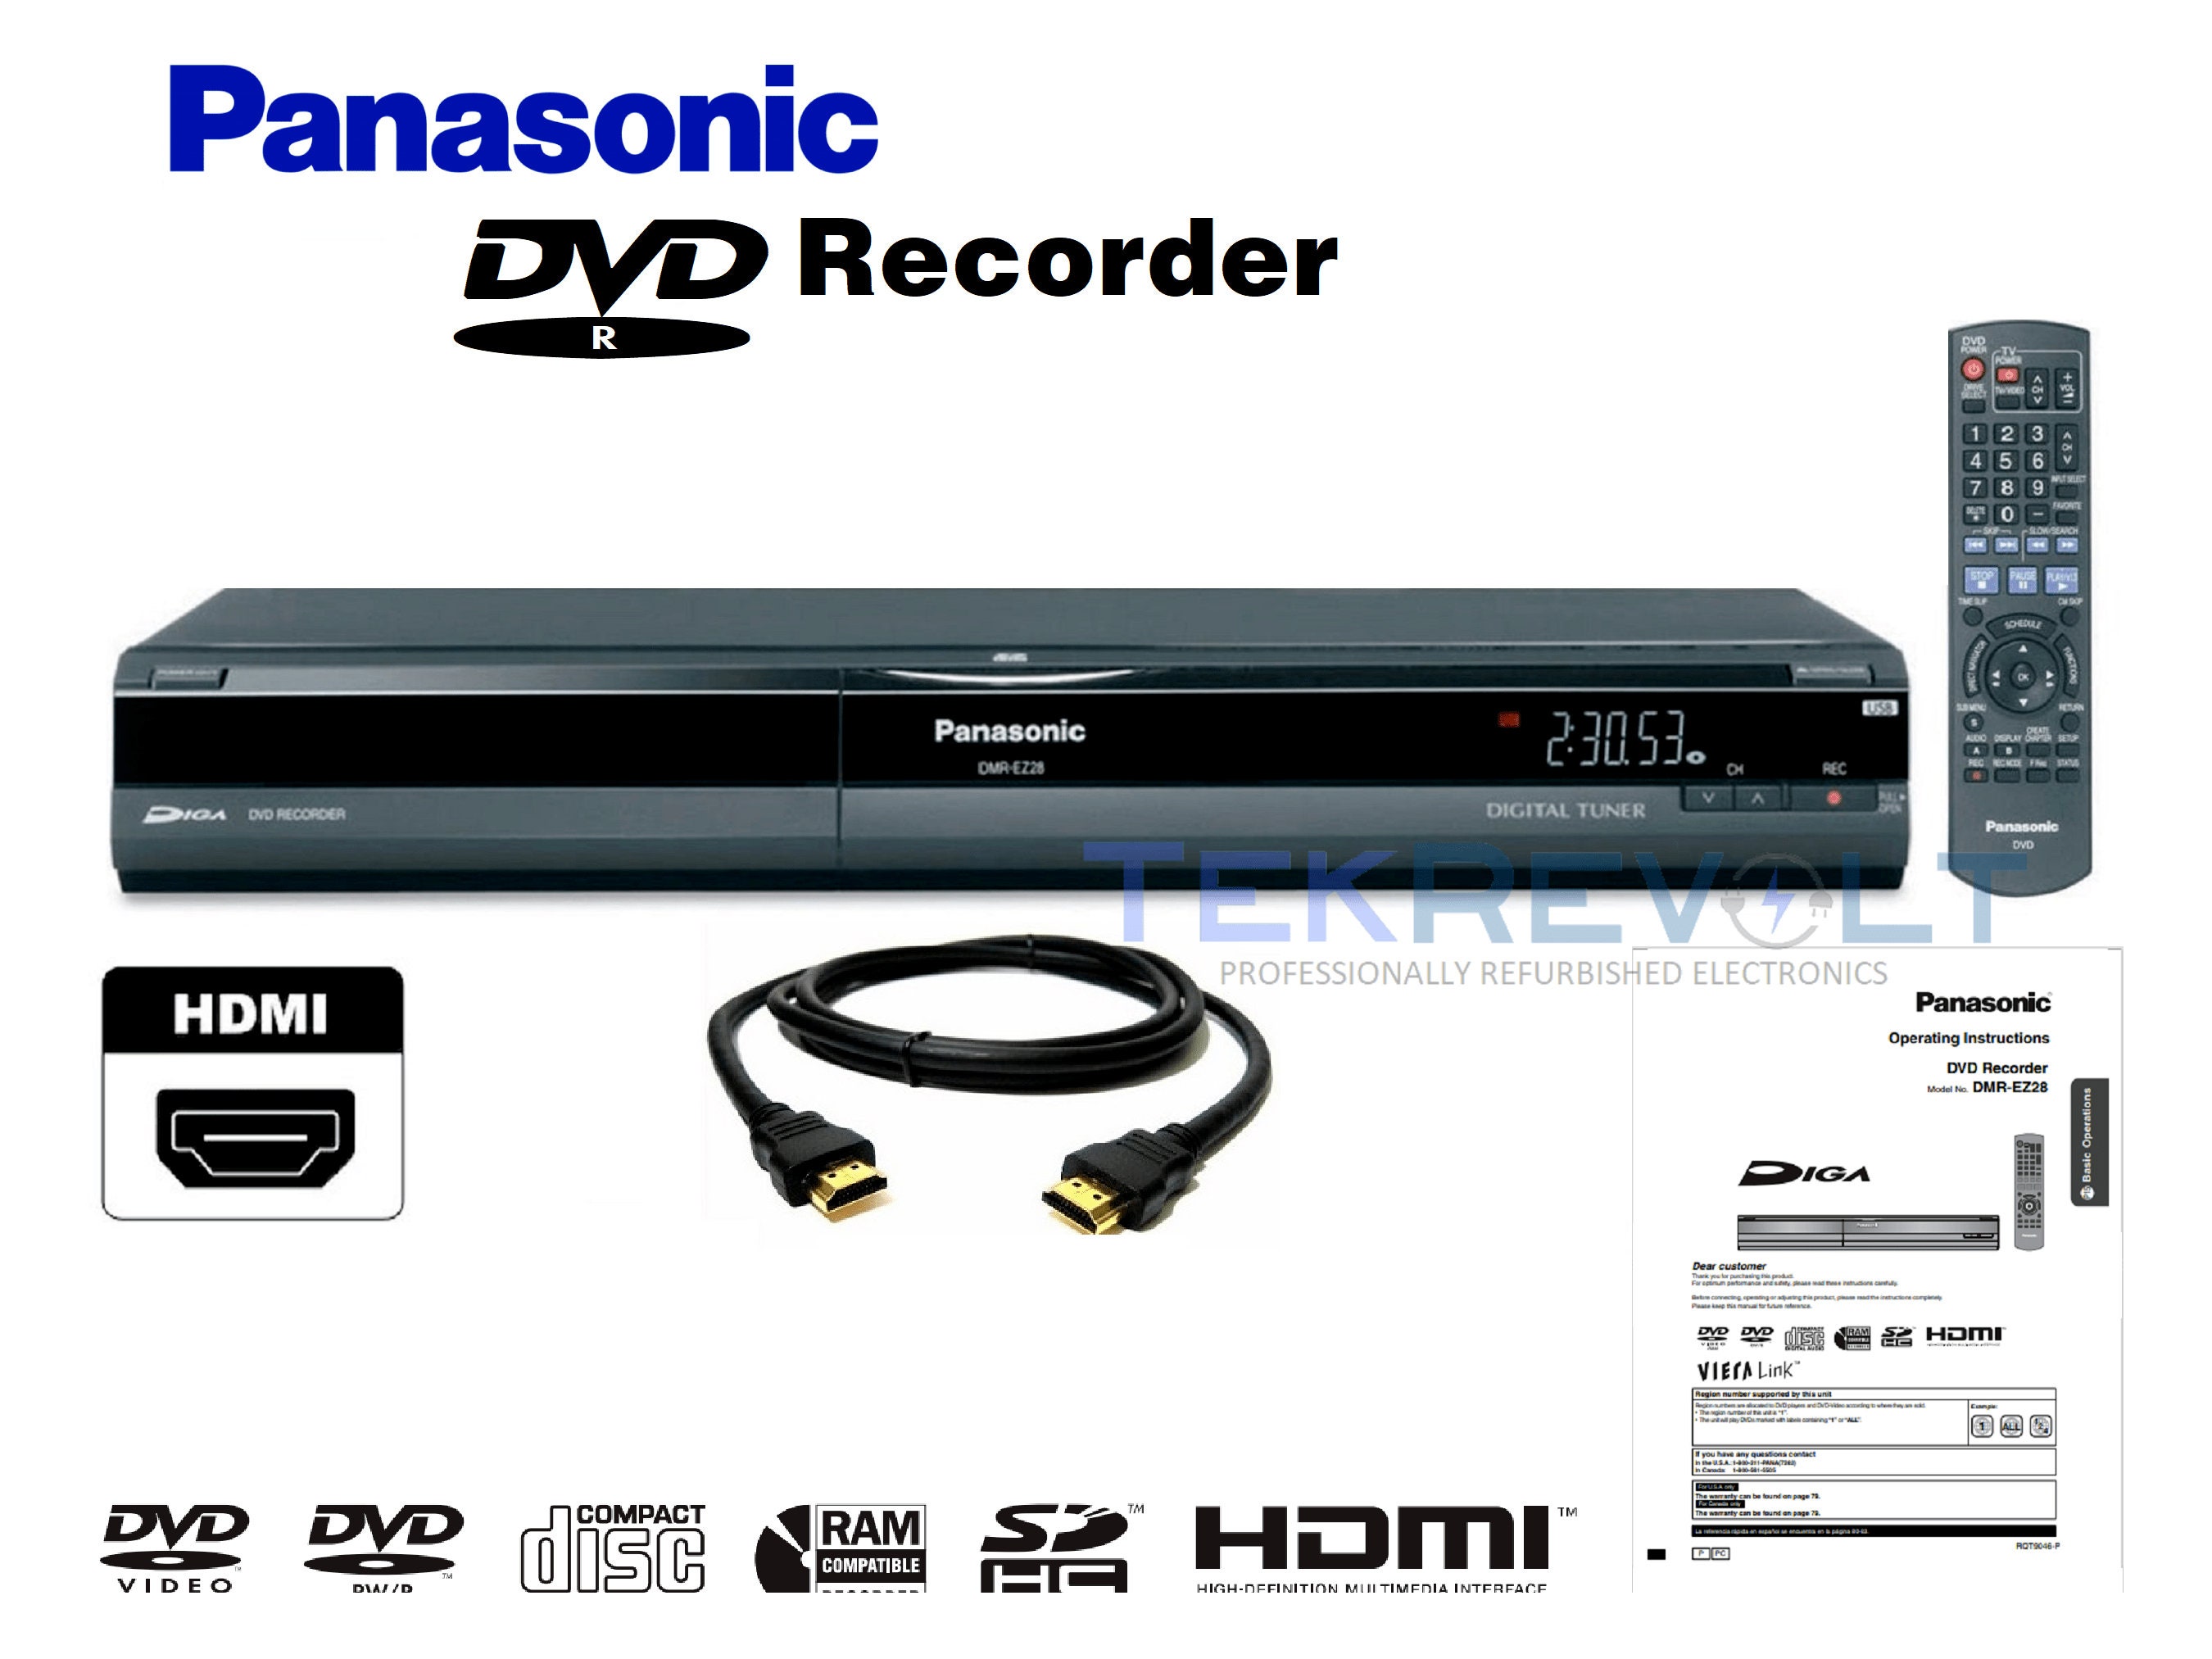 joggen Wissen Op de kop van Panasonic DMR-EZ28 DVD Recorder 1080p Upconversion Digital - Etsy